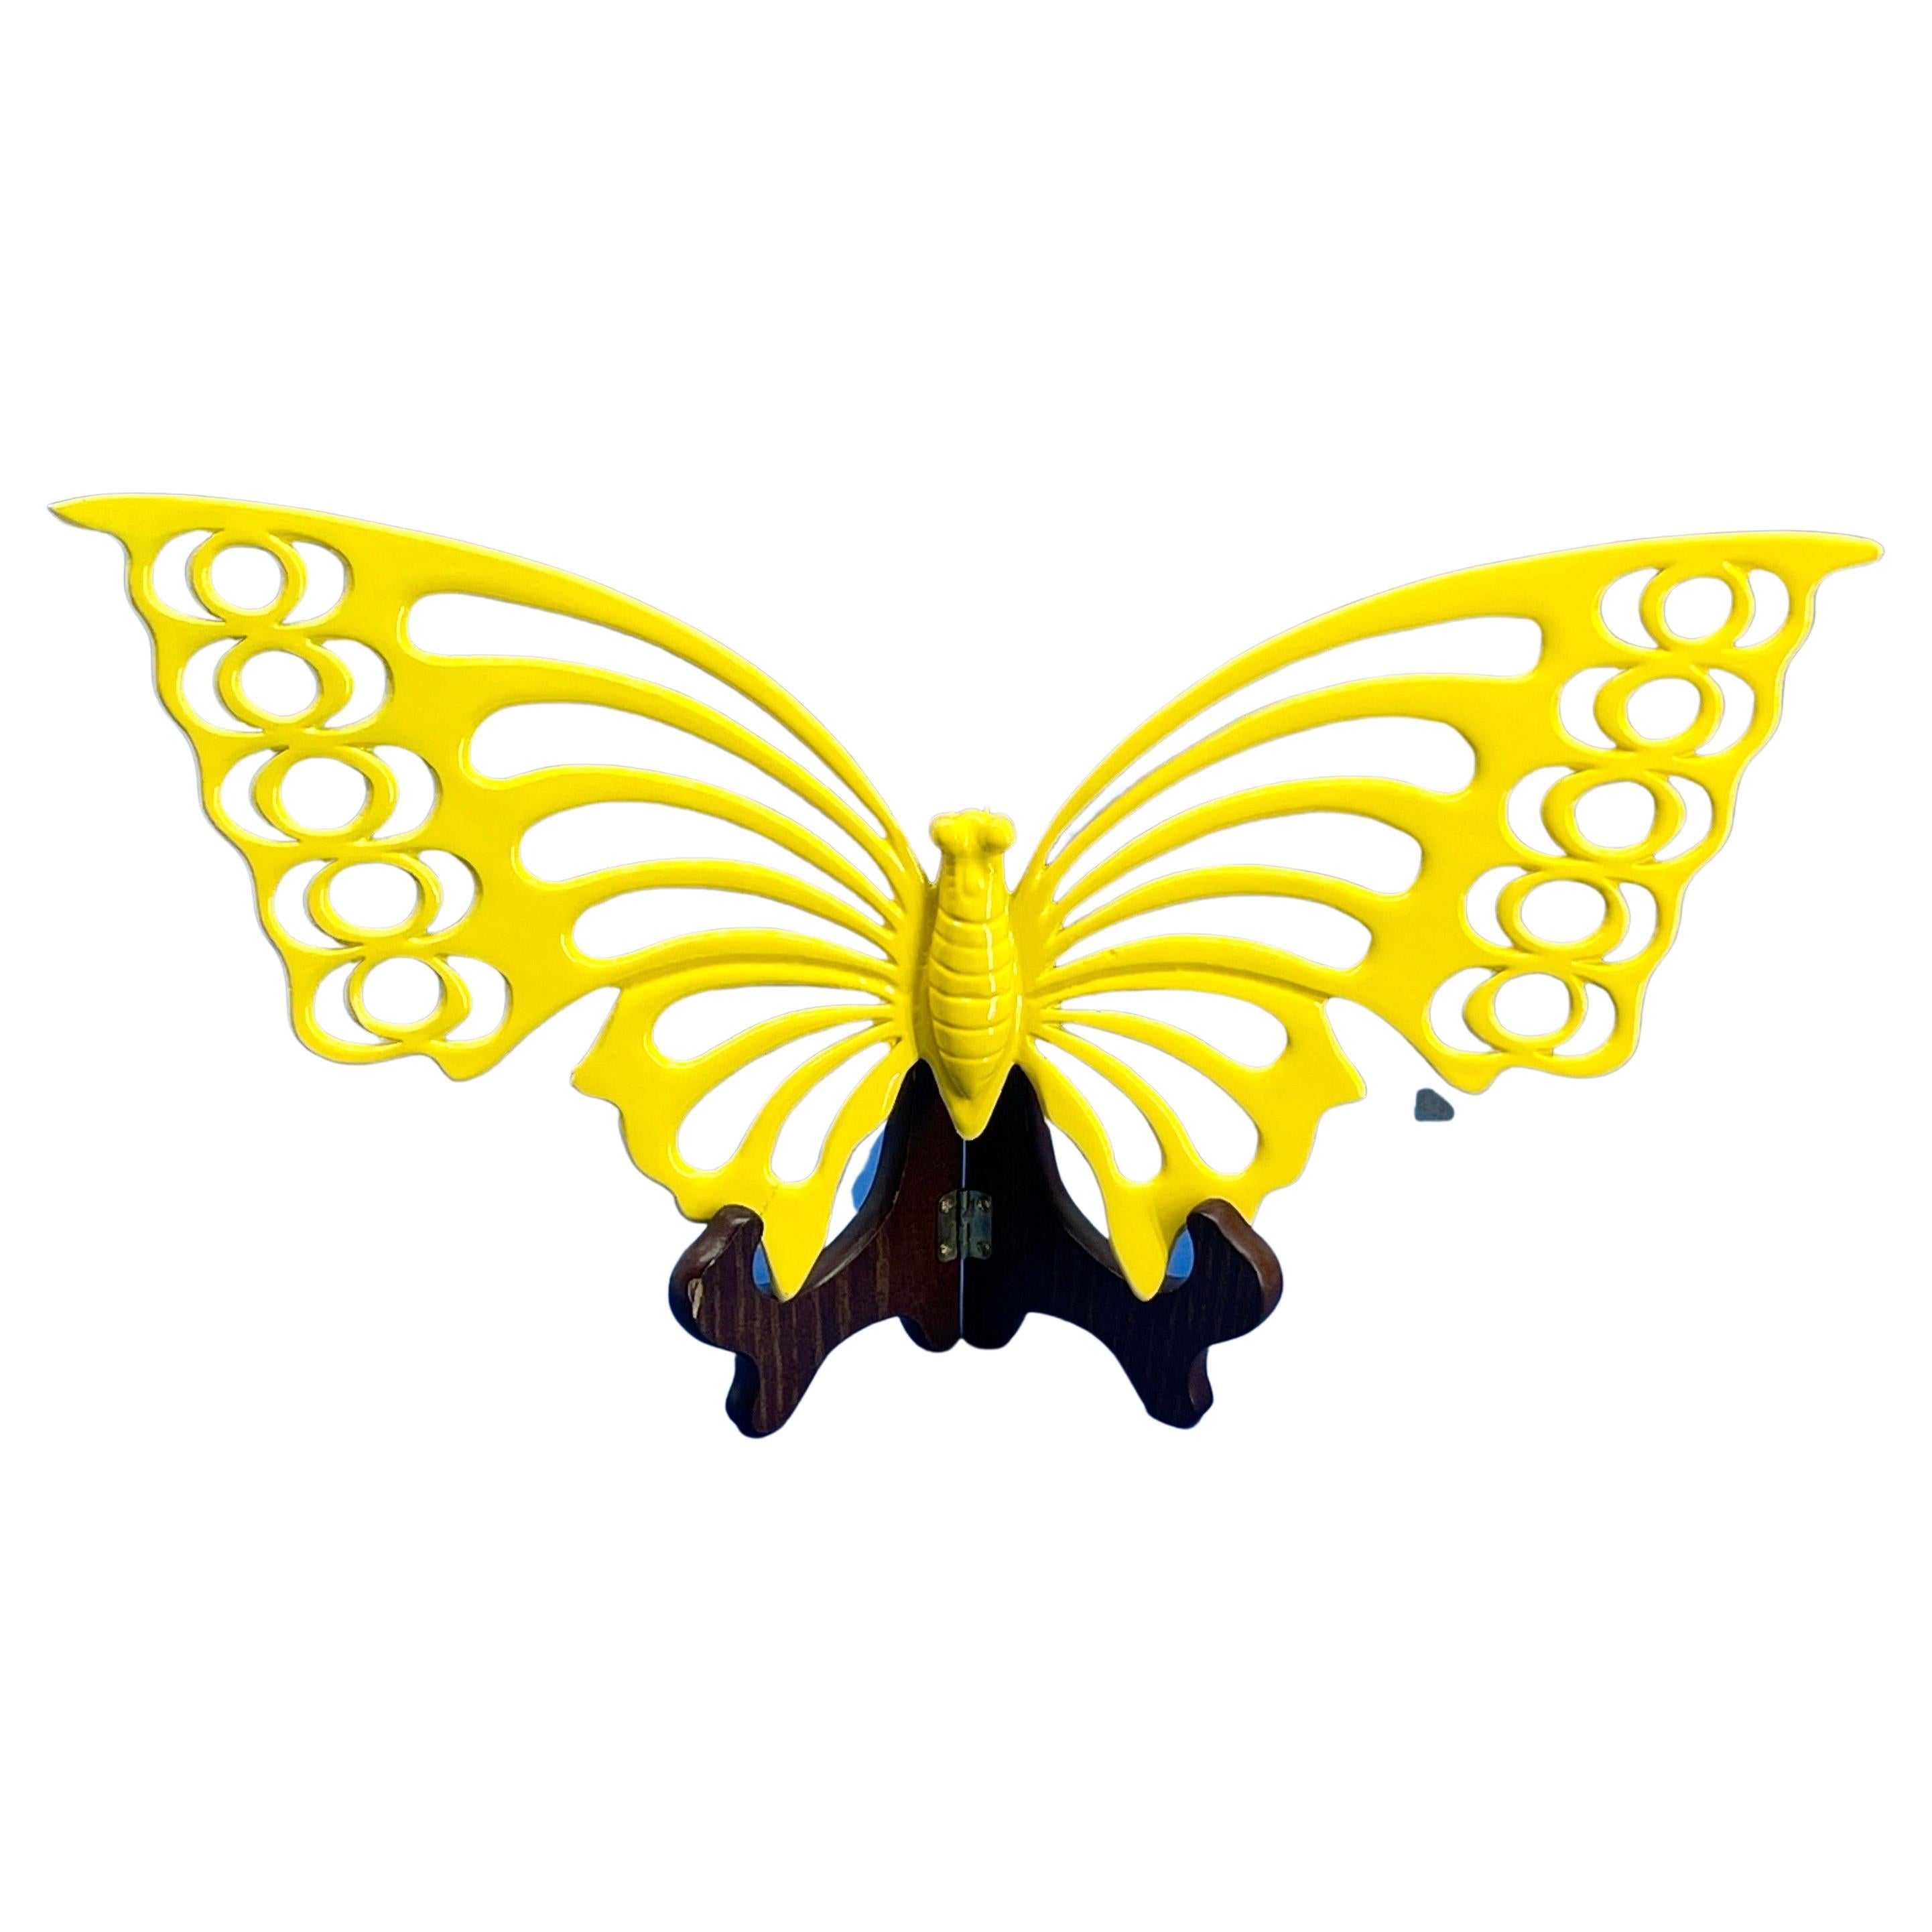 Großer Schmetterling in Powder Coated Bright Sunshine Yellow aus massivem Messing Wand oder Regal  Dekoration, 1960er Jahre 

Einzigartige Vintage-Wanddekoration Schmetterling. Ein fantastischer Blickfang für die Wand, allein oder in einer Gruppe.